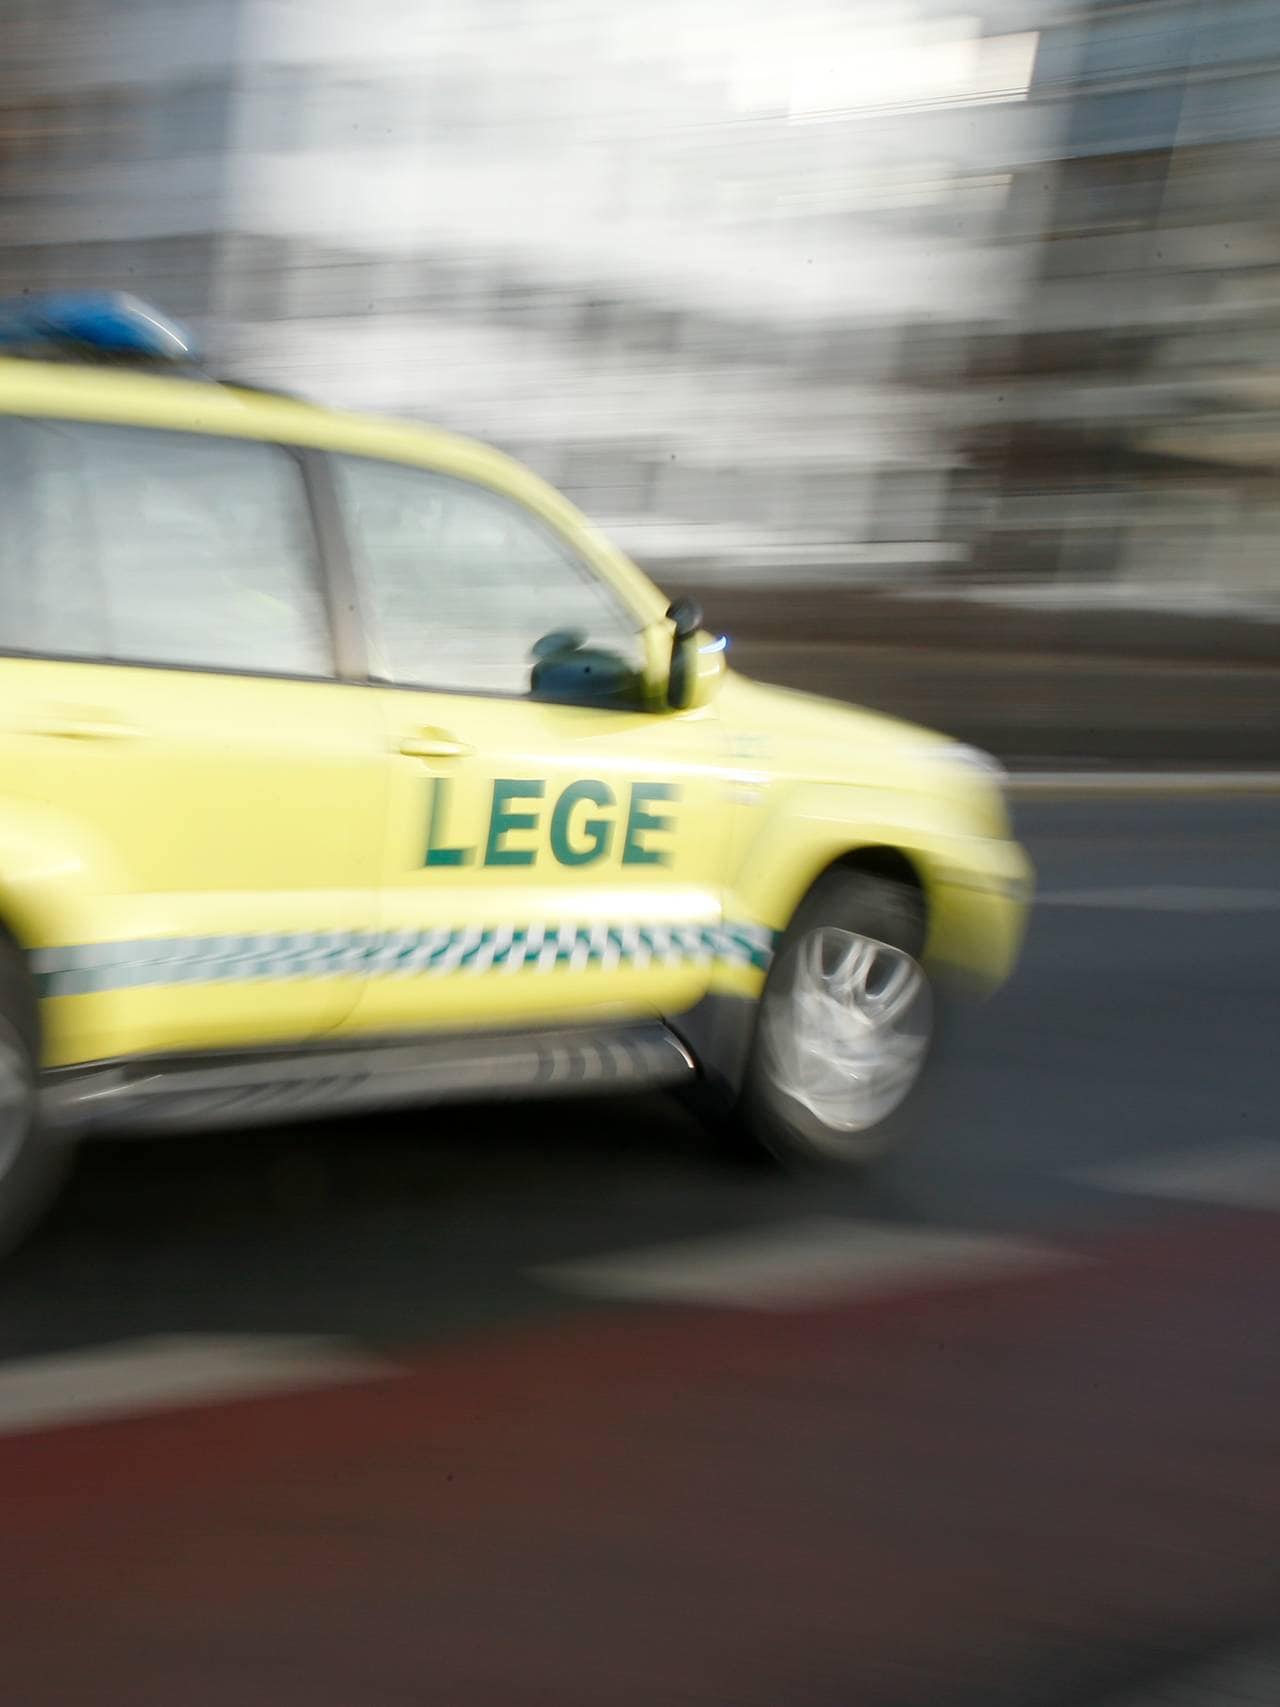 En legebil/ambulanse kjører utrykning i Bjørvika.
Foto: Terje Pedersen / NTB